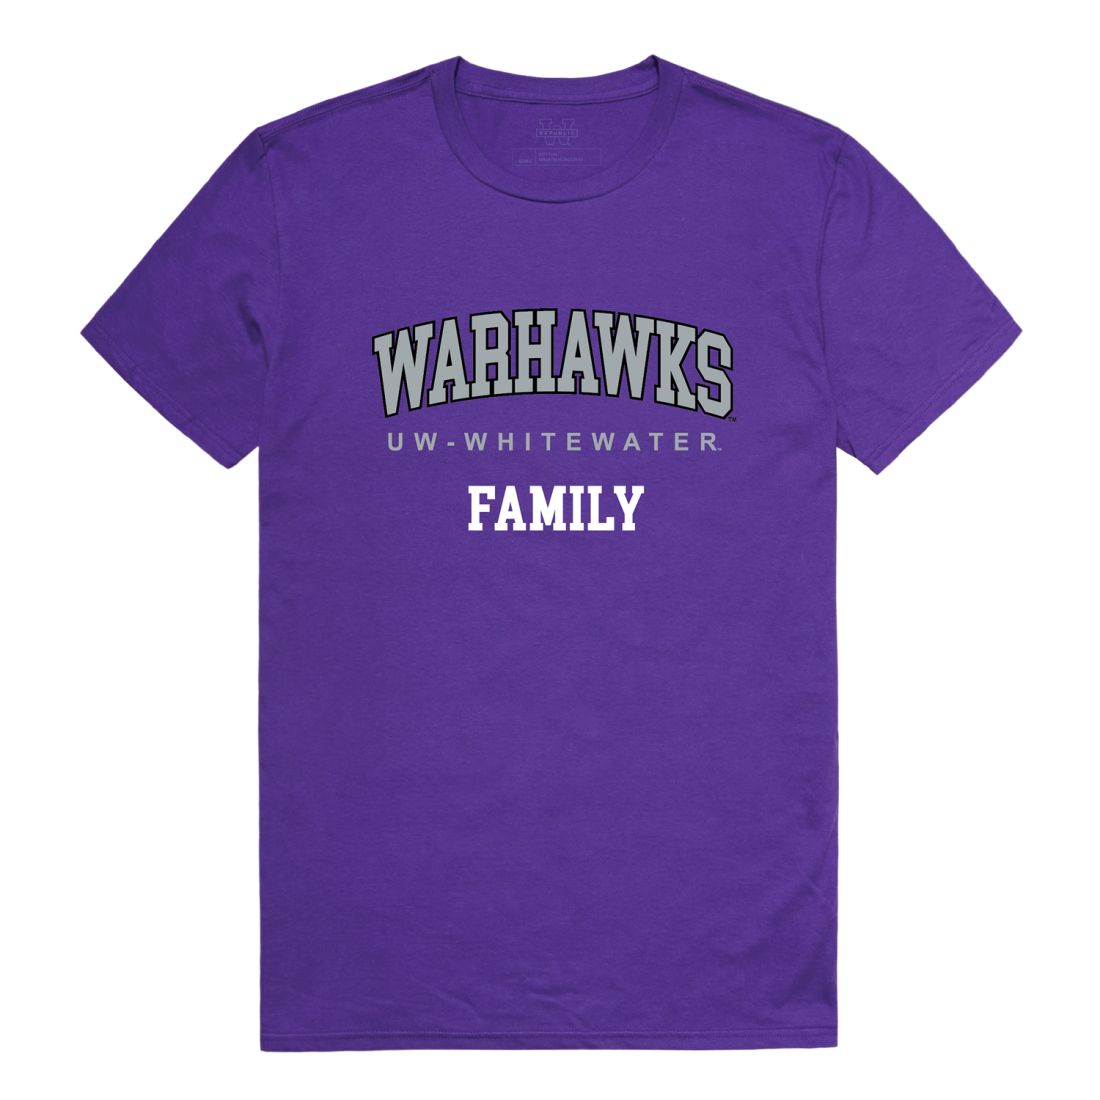 UWW University of Wisconsin Whitewater Warhawks Family T-Shirt